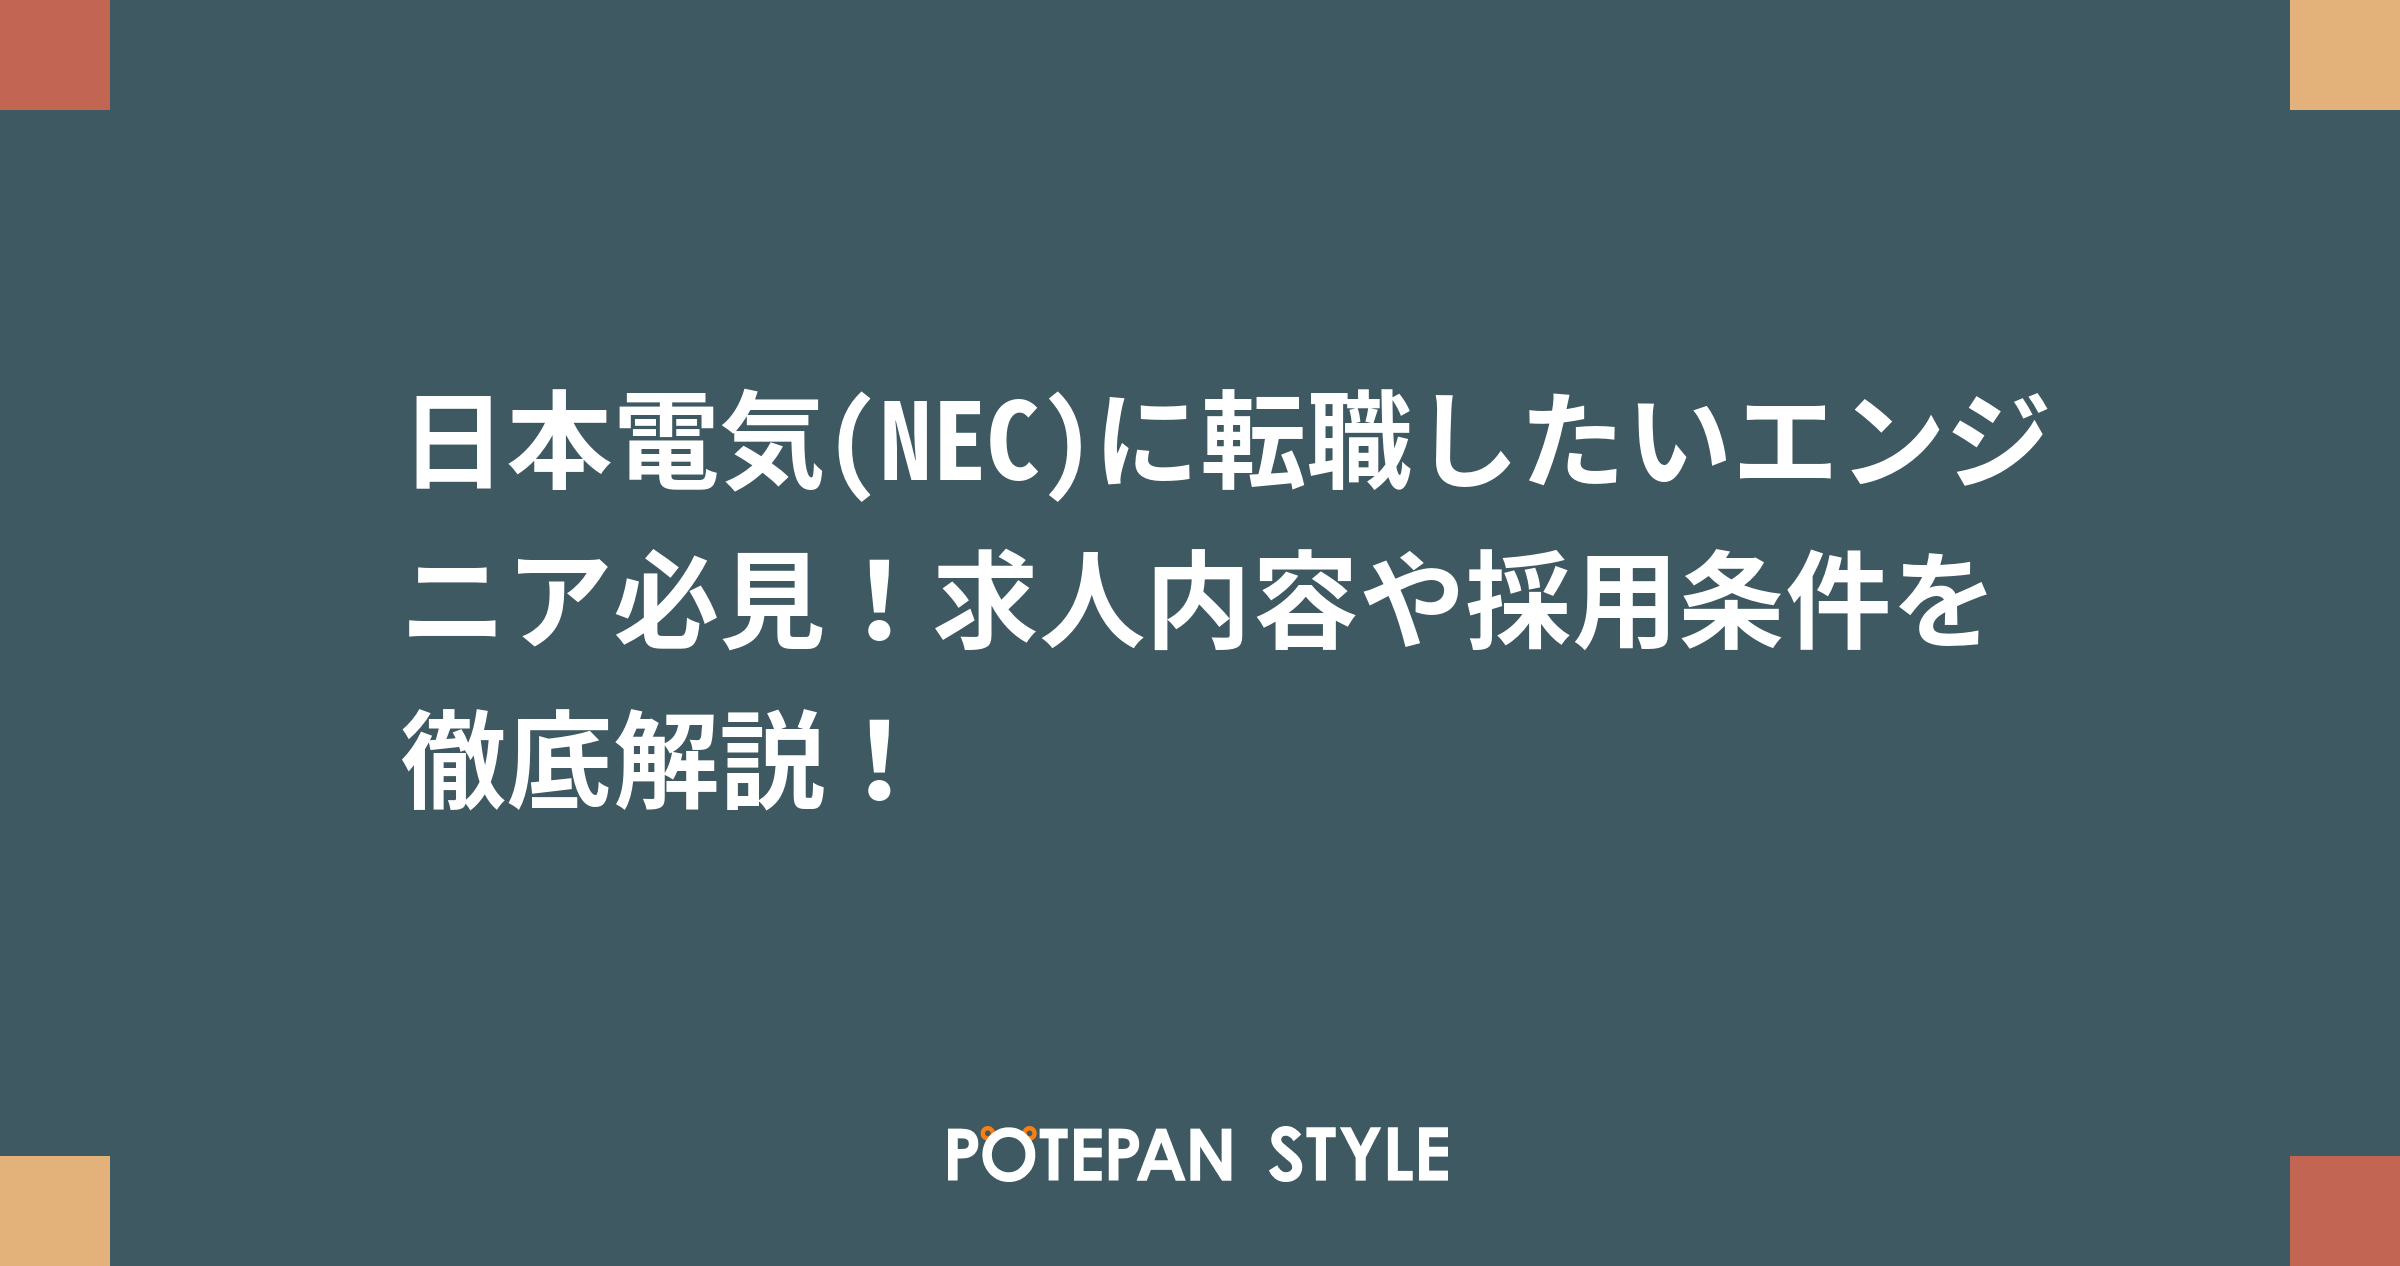 日本電気 Nec に転職したいエンジニア必見 求人内容や採用条件を徹底解説 ポテパンスタイル